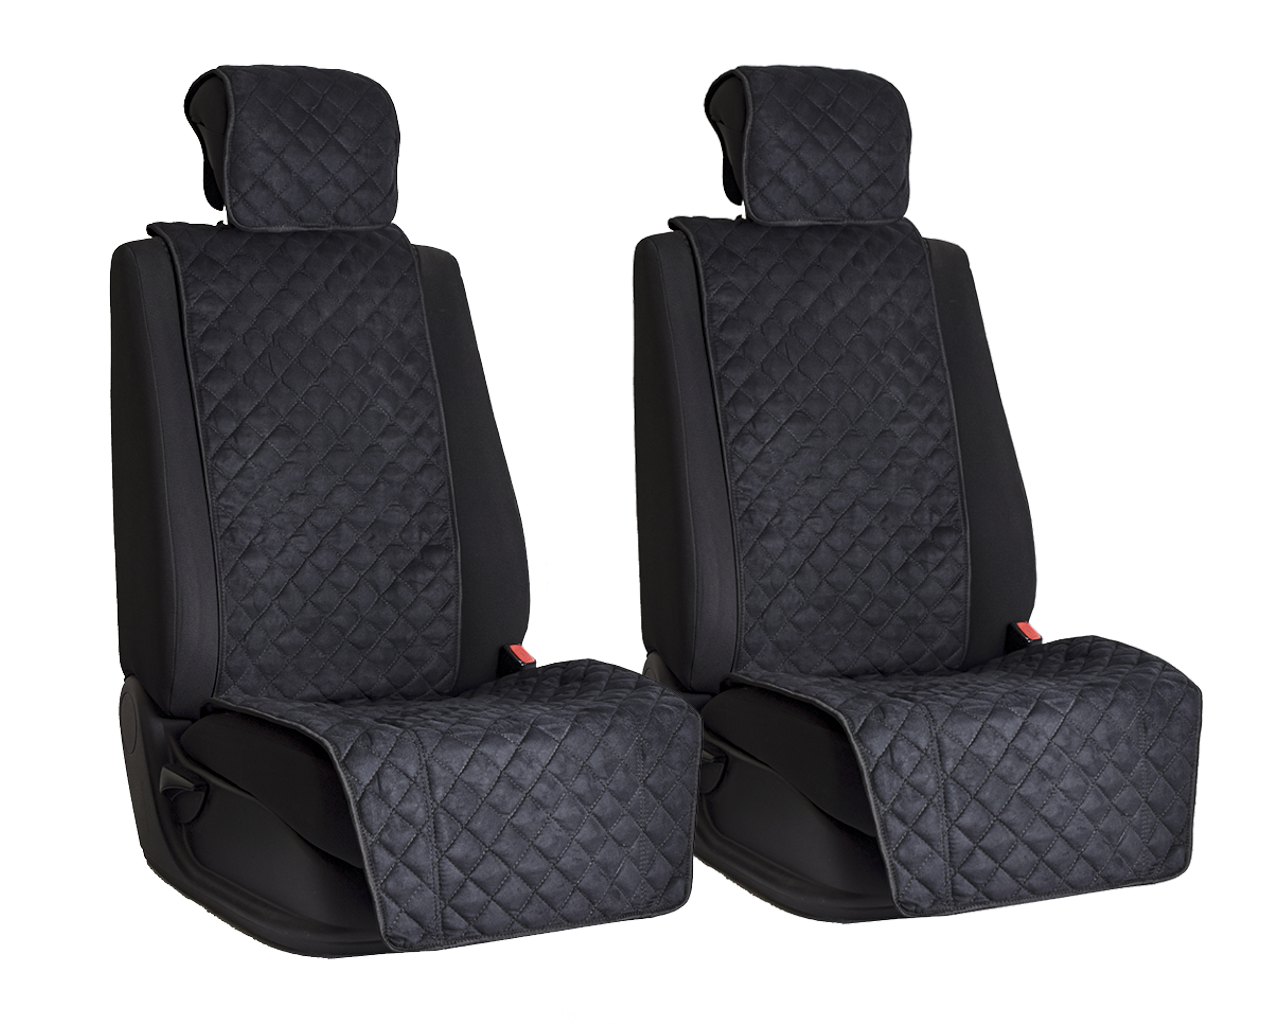 Vital Technologies Комплект накидок на передние сиденья из алькантары (квадрат) Black